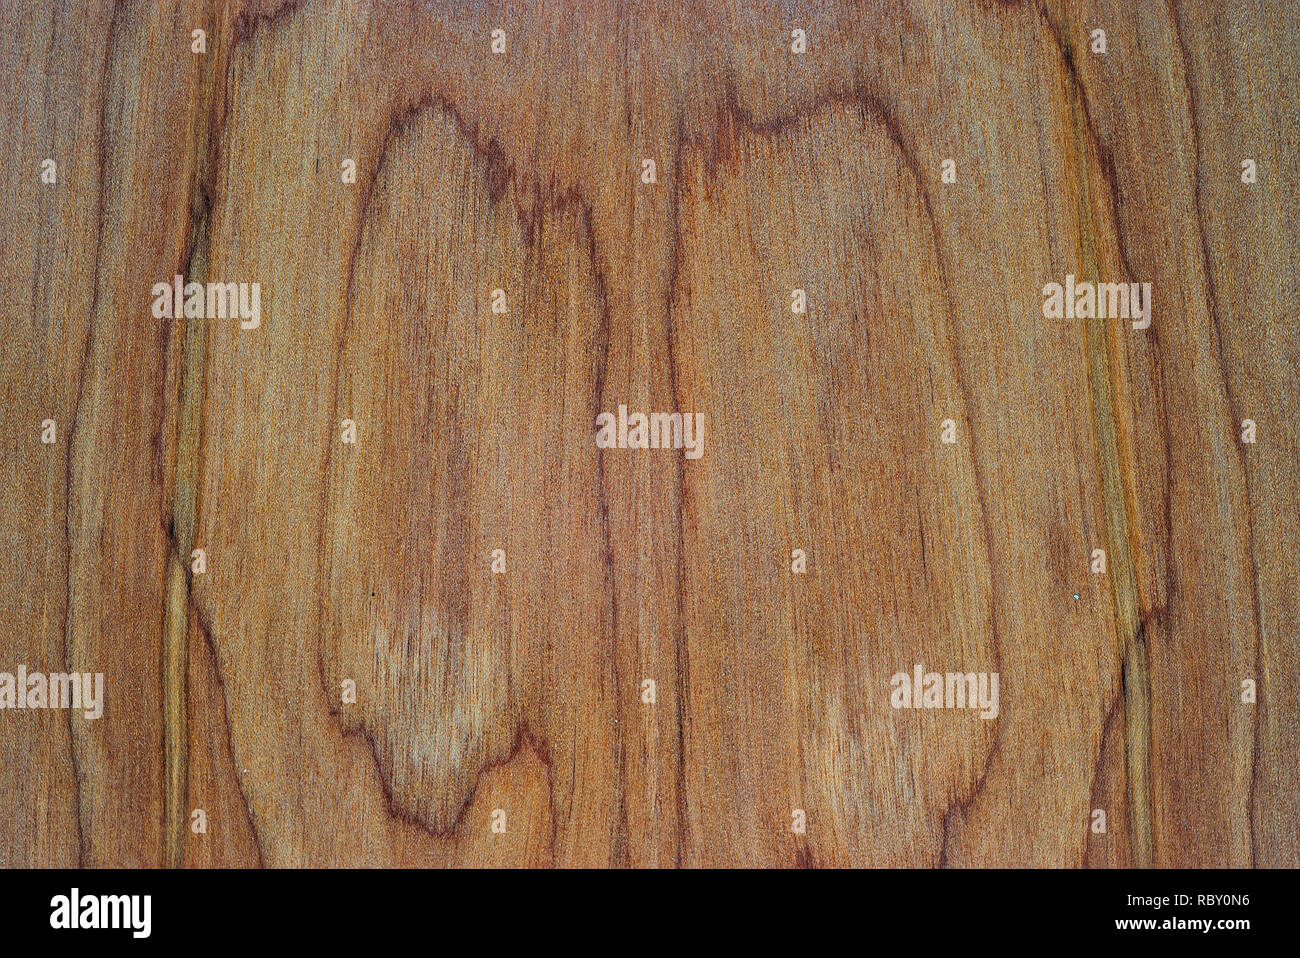 La texture du bois mat côtes, lutherie, guitare back in close up Banque D'Images